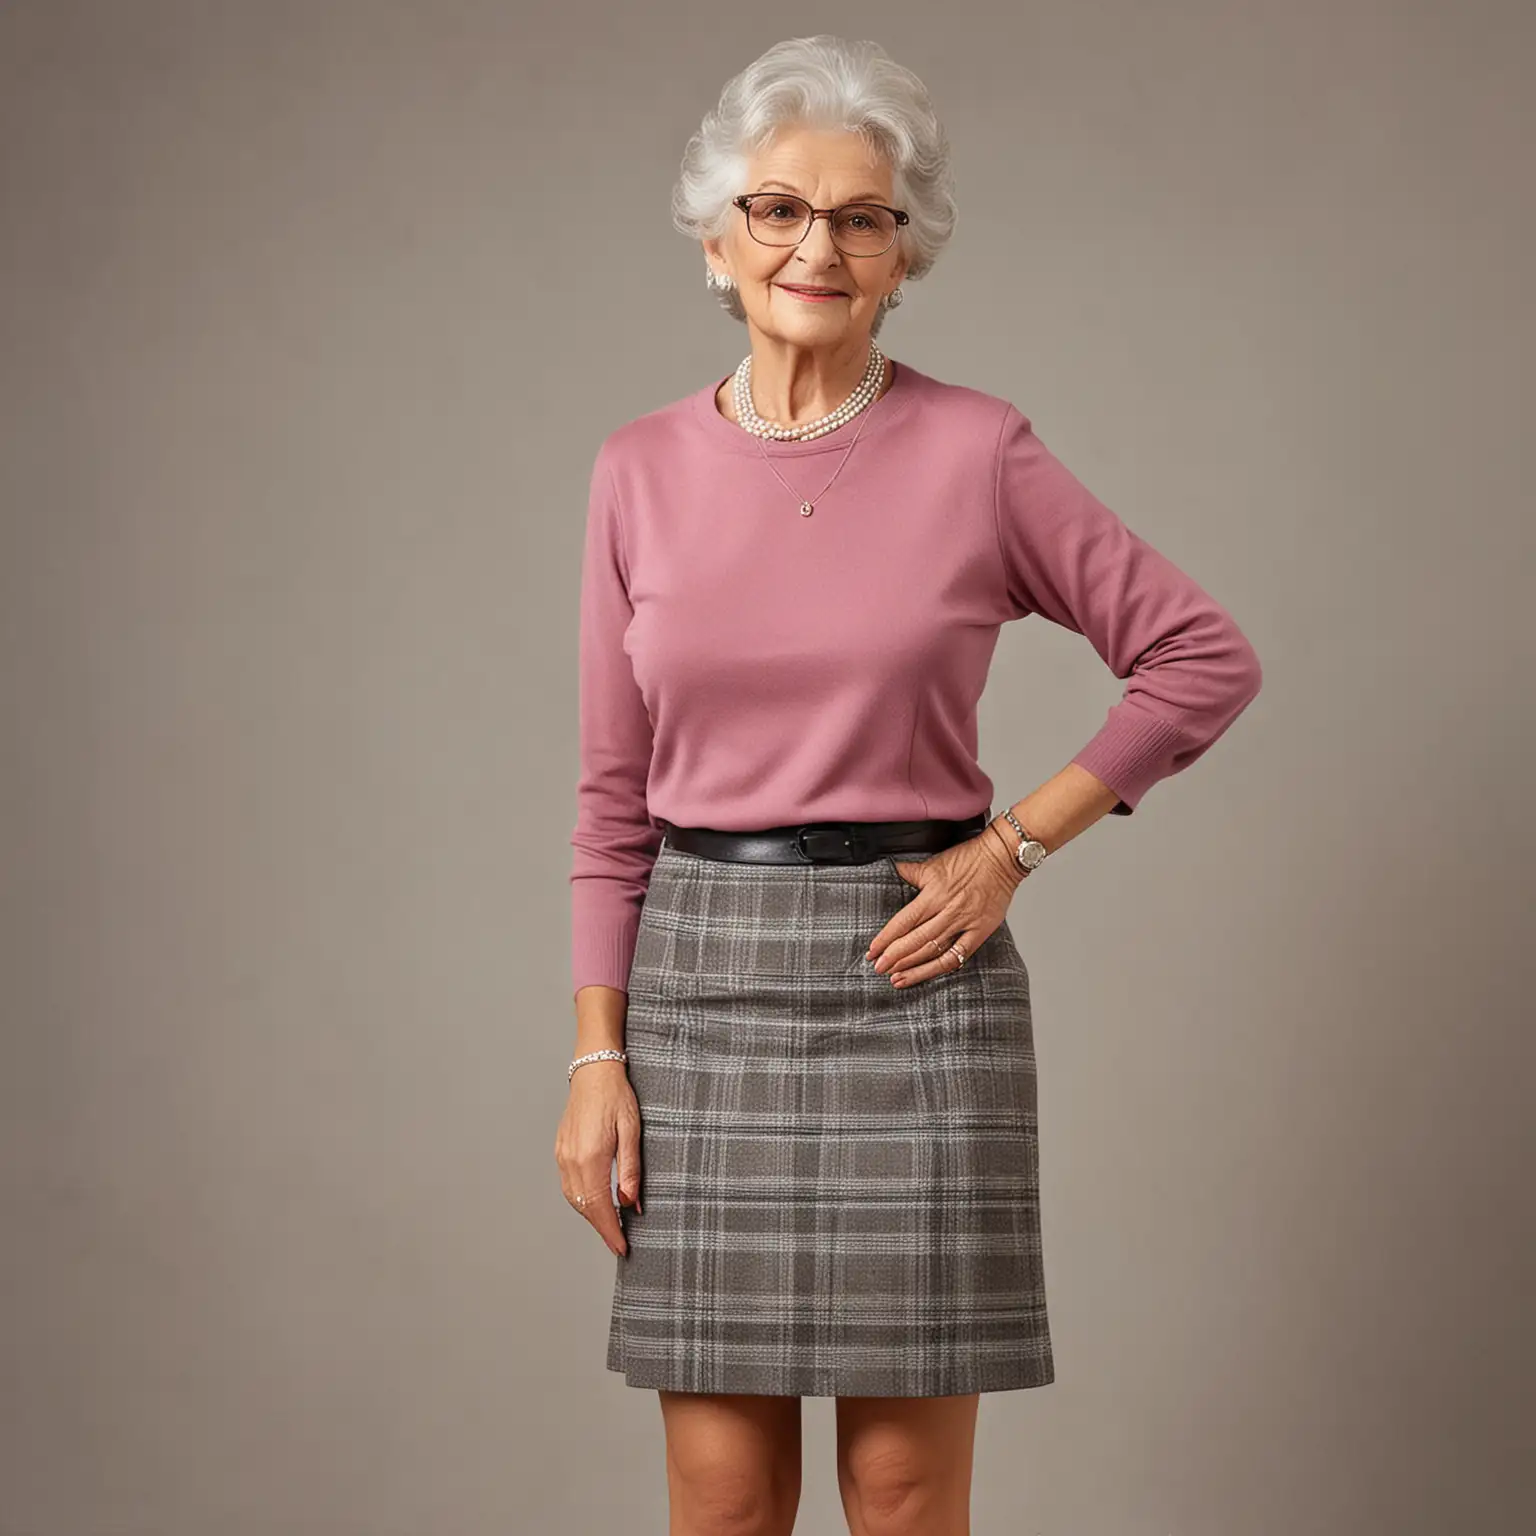 A beautiful granny as a teacher in a short skirt